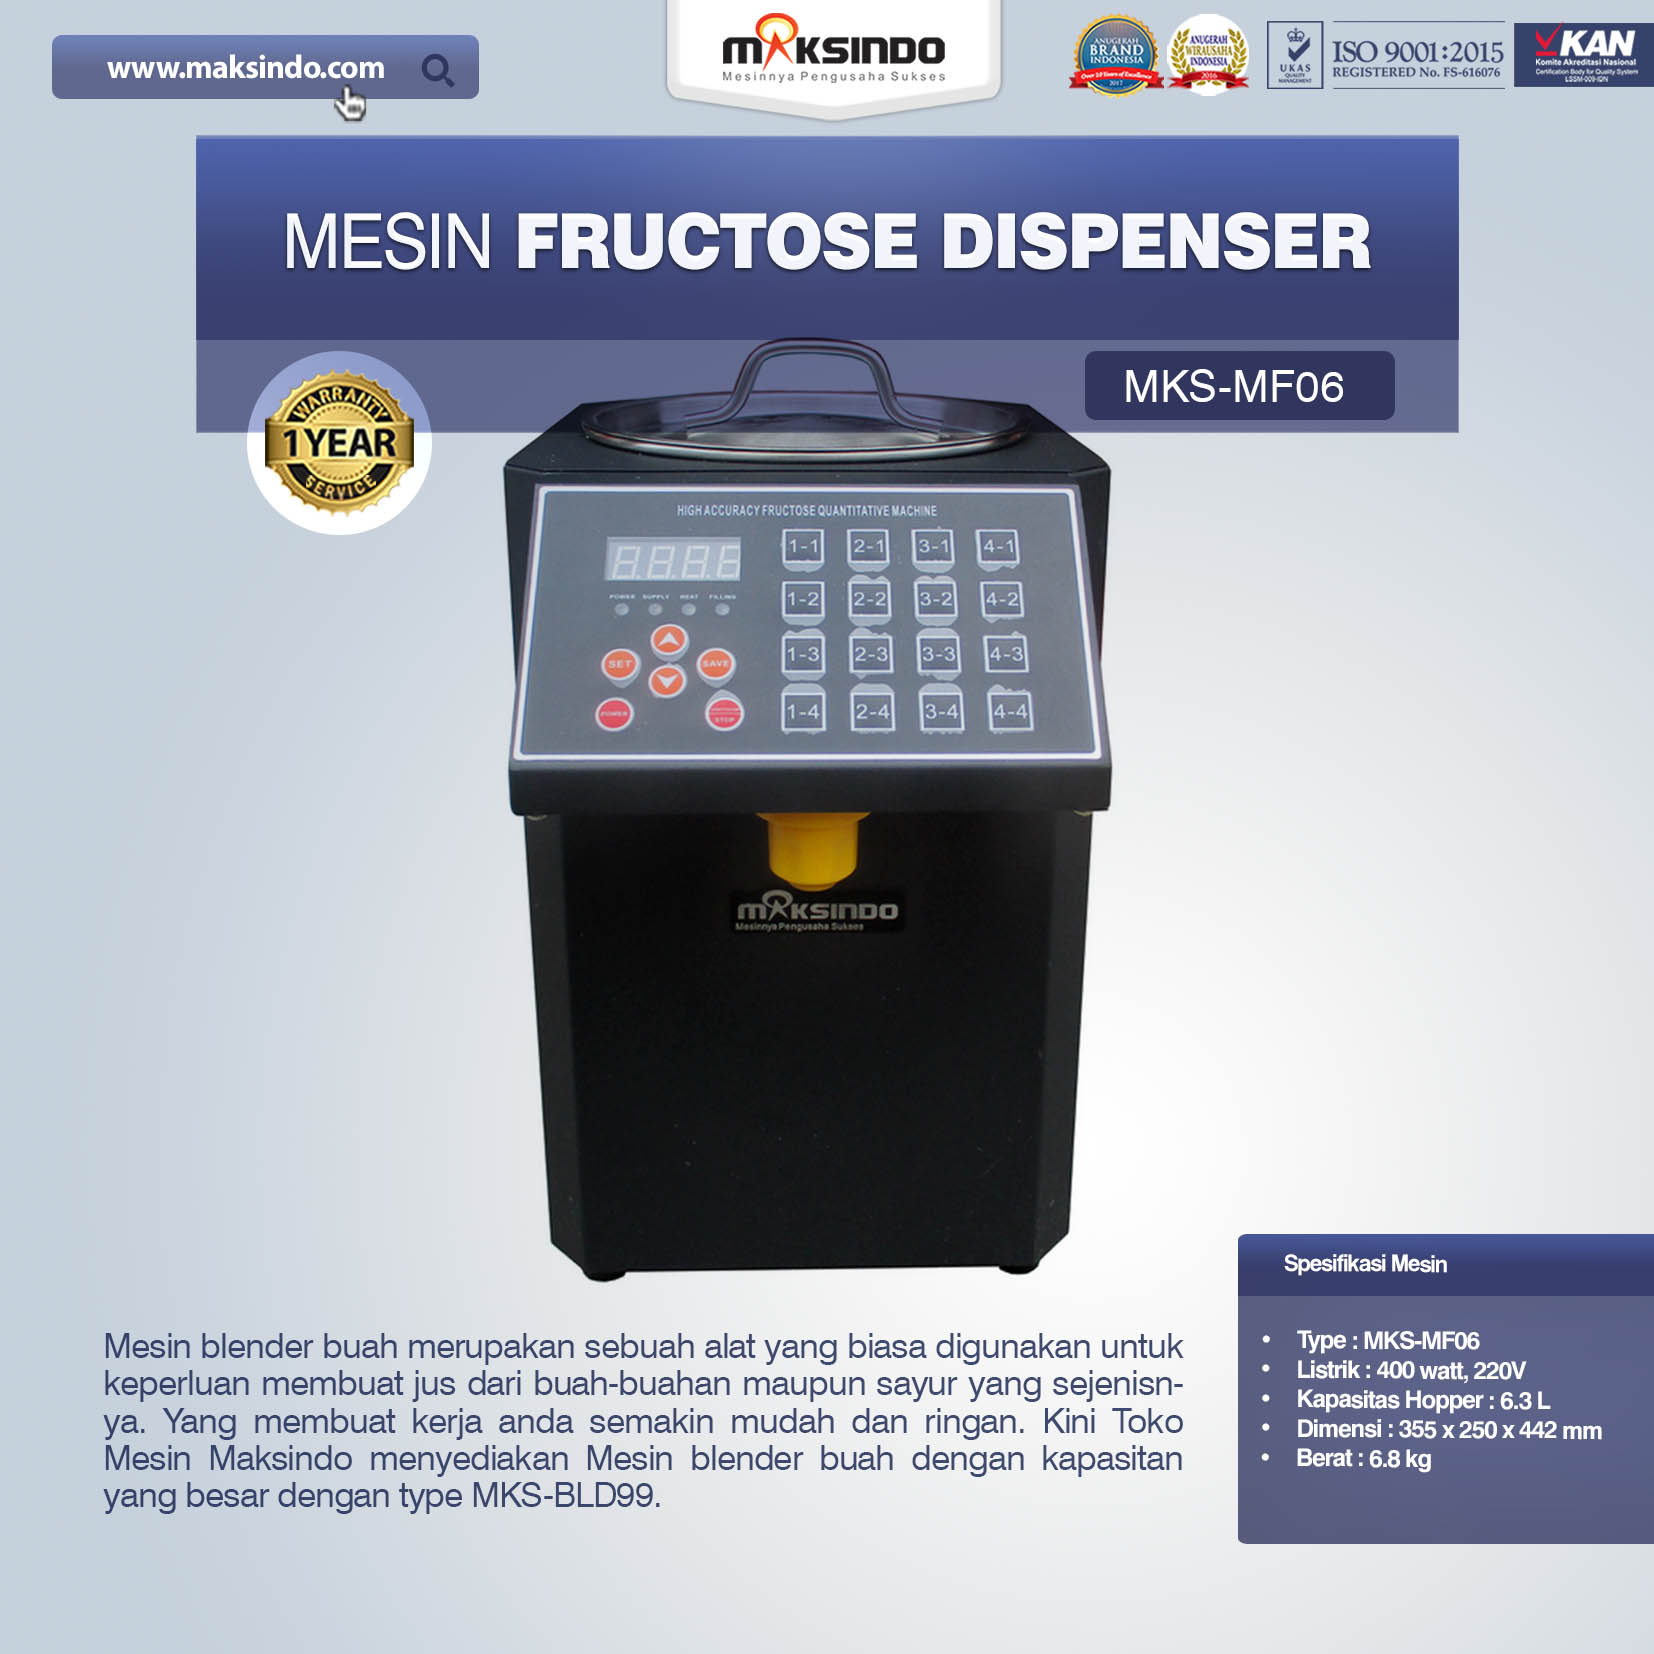 Jual Mesin Fructose Dispenser MKS-MF06 Di Malang